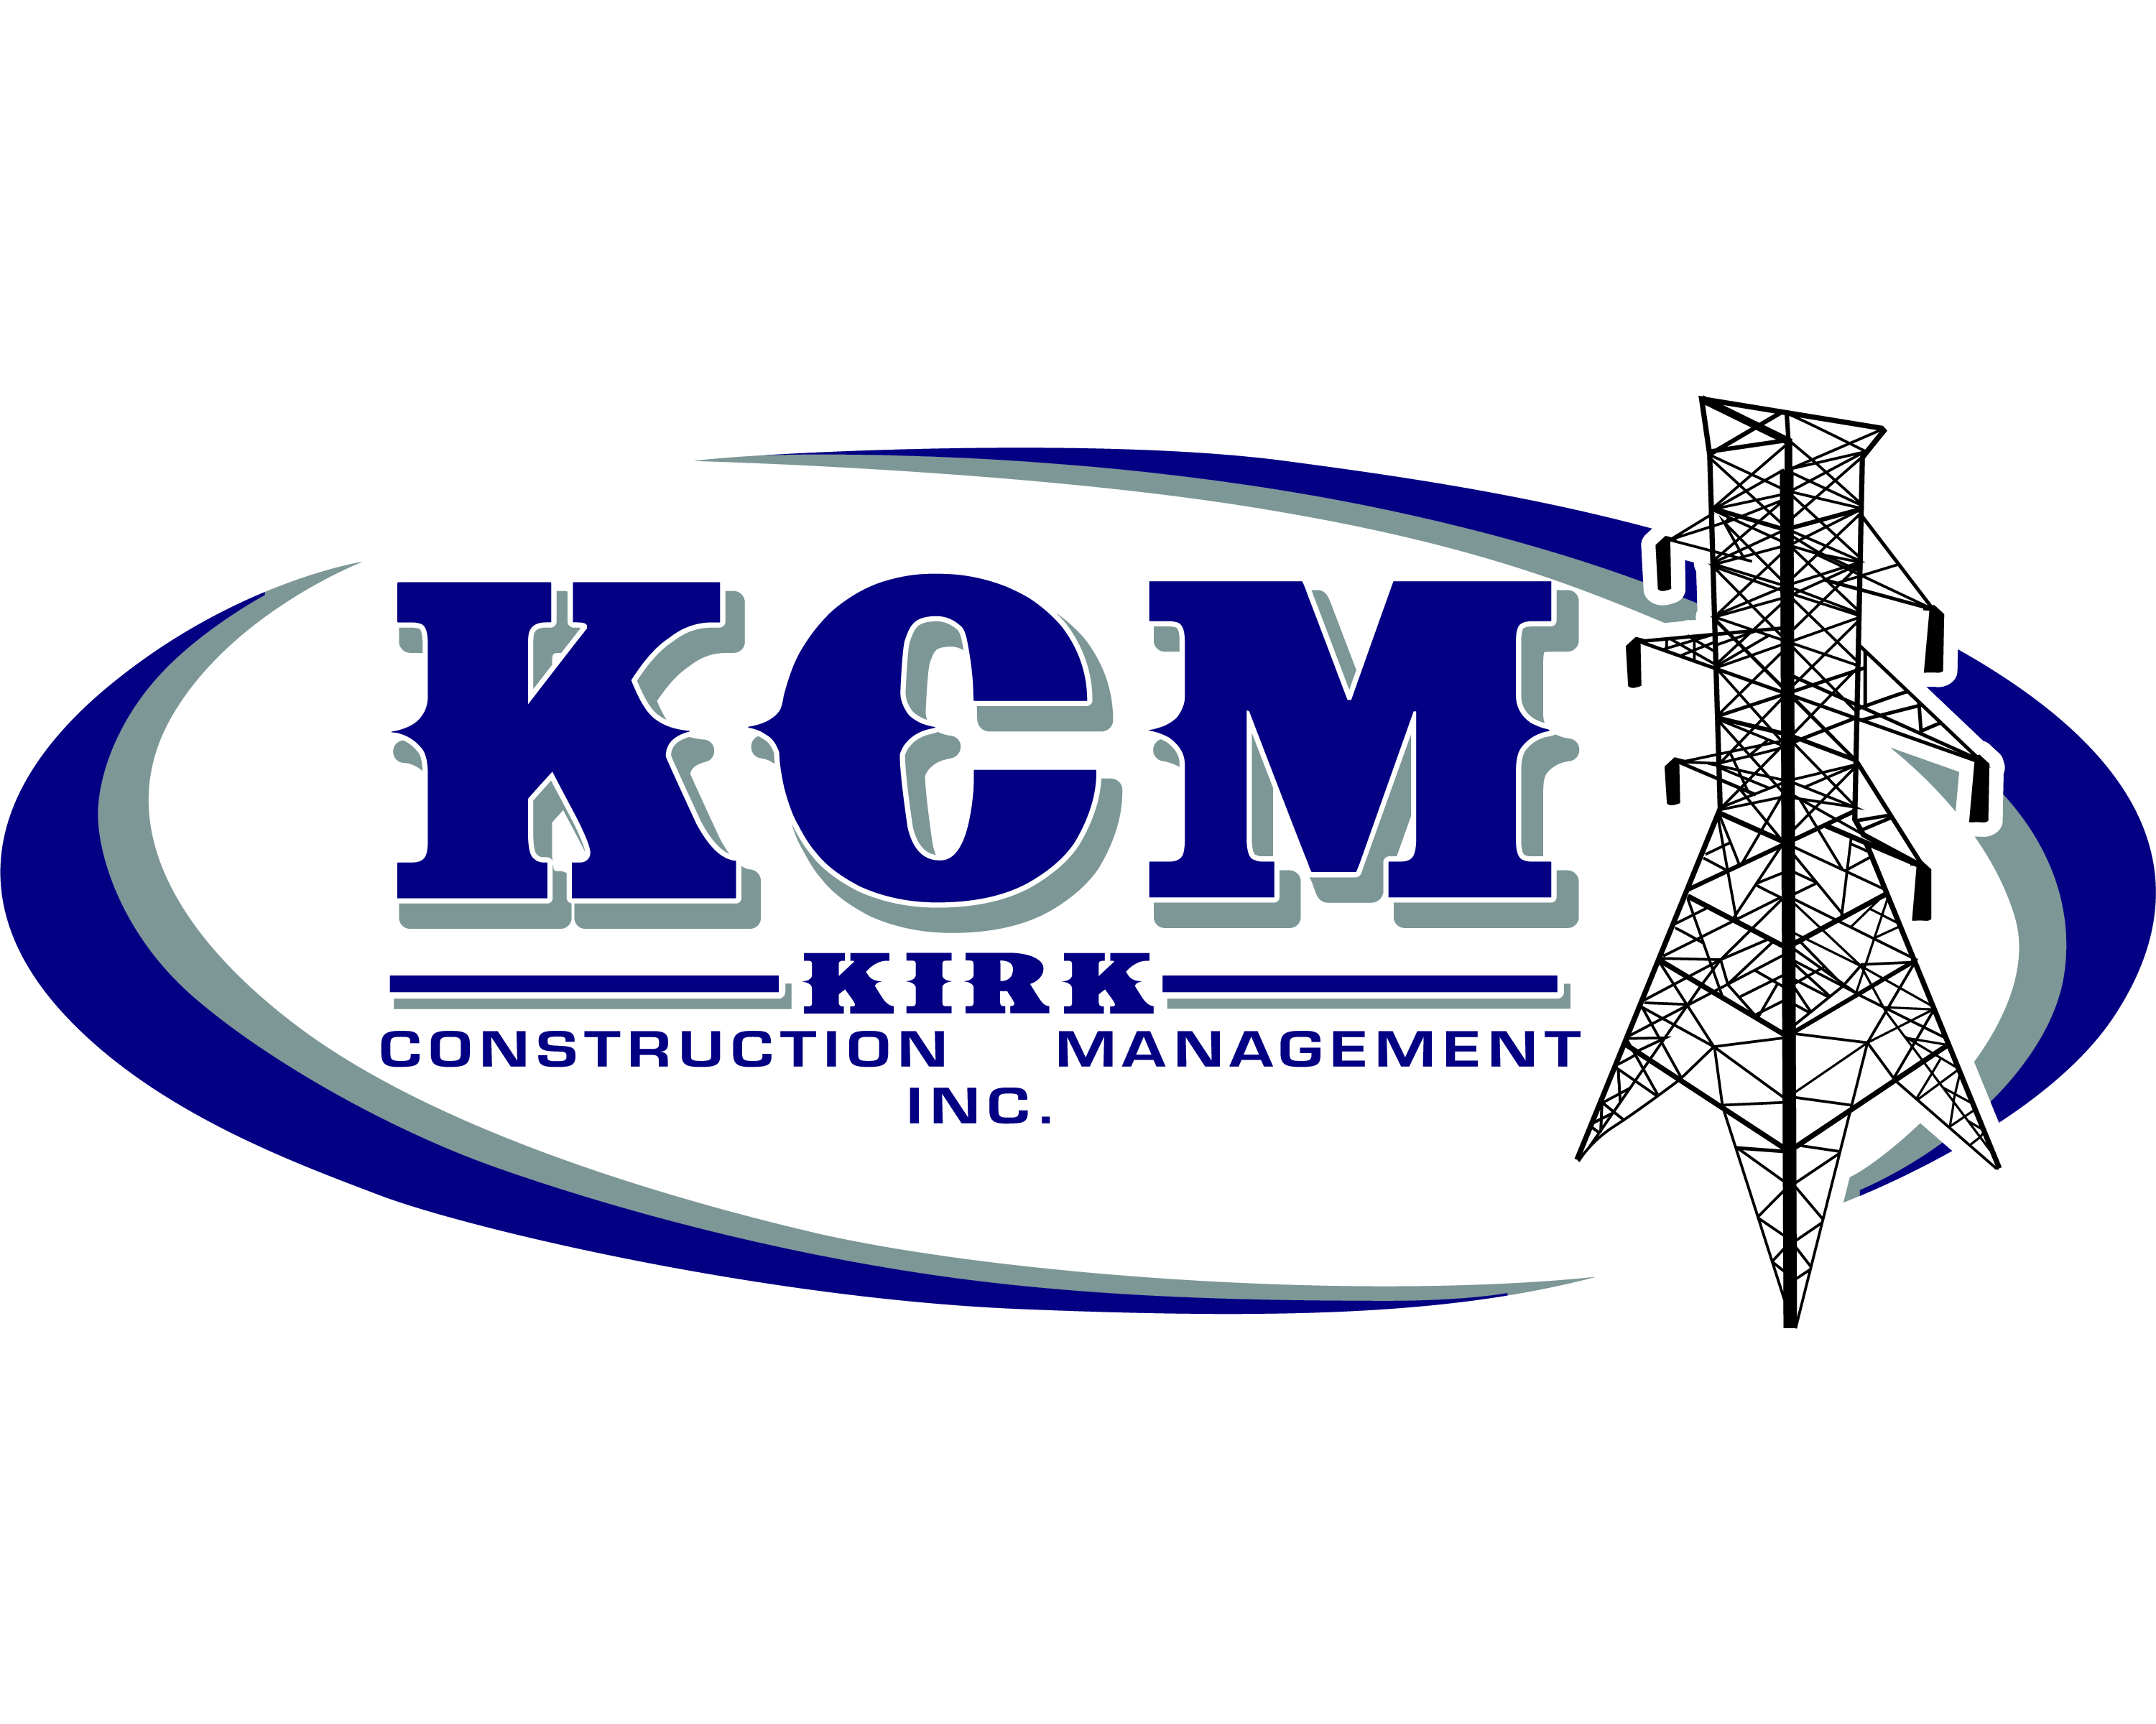 Kirk Construction Management